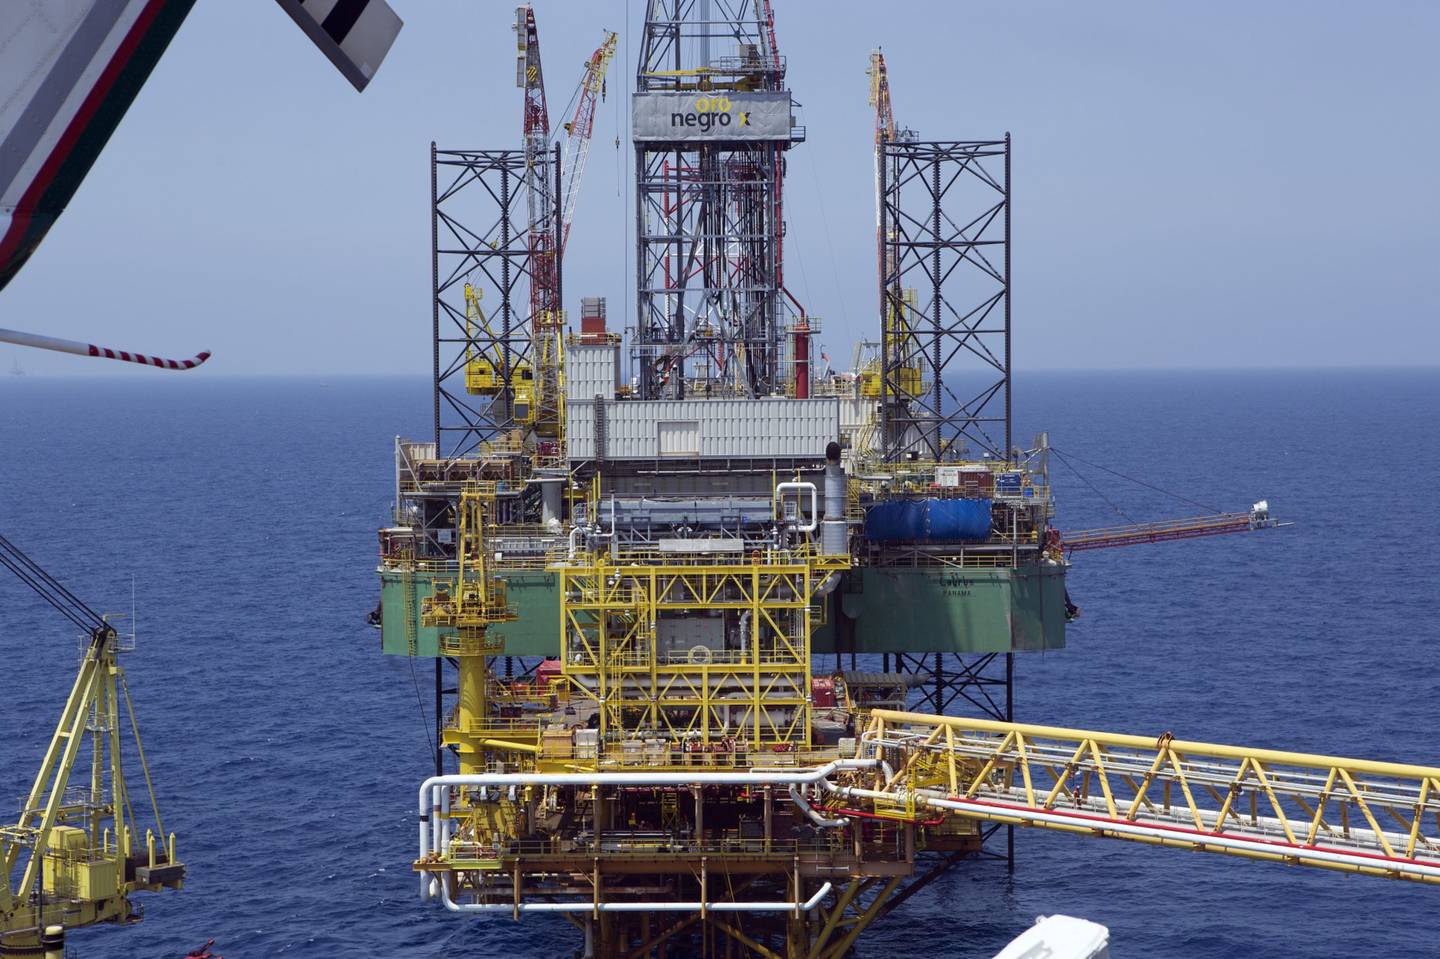 Una plataforma de perforación petrolera en el Golfo de México, operada por la empresa estatal Petróleos Mexicanos, conocida como Pemex.